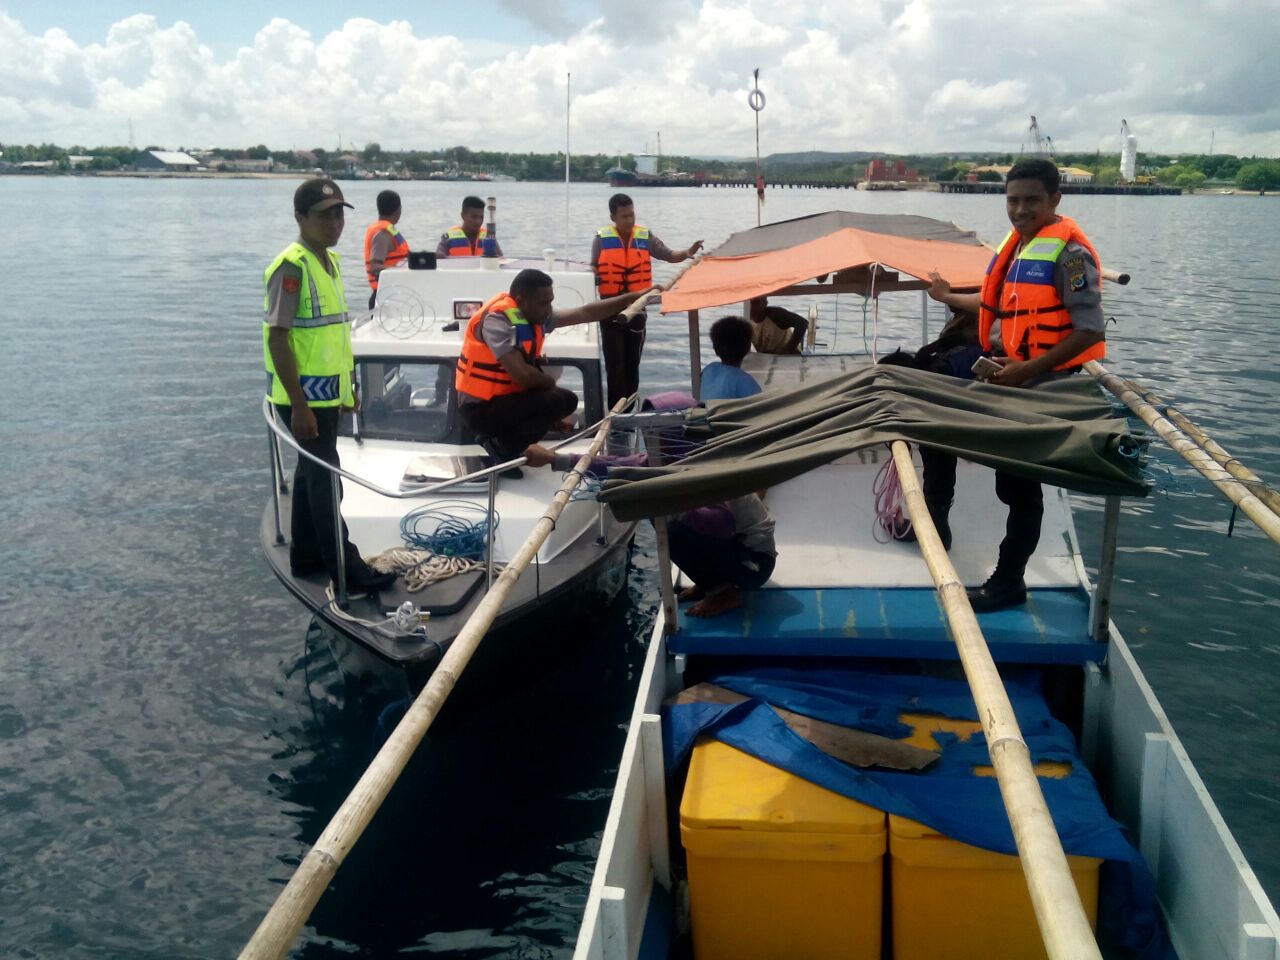 Wilayah laut potensi gangguan kamtibmas, KP3 Laut Polres Sumba Timur gencarkan patroli laut